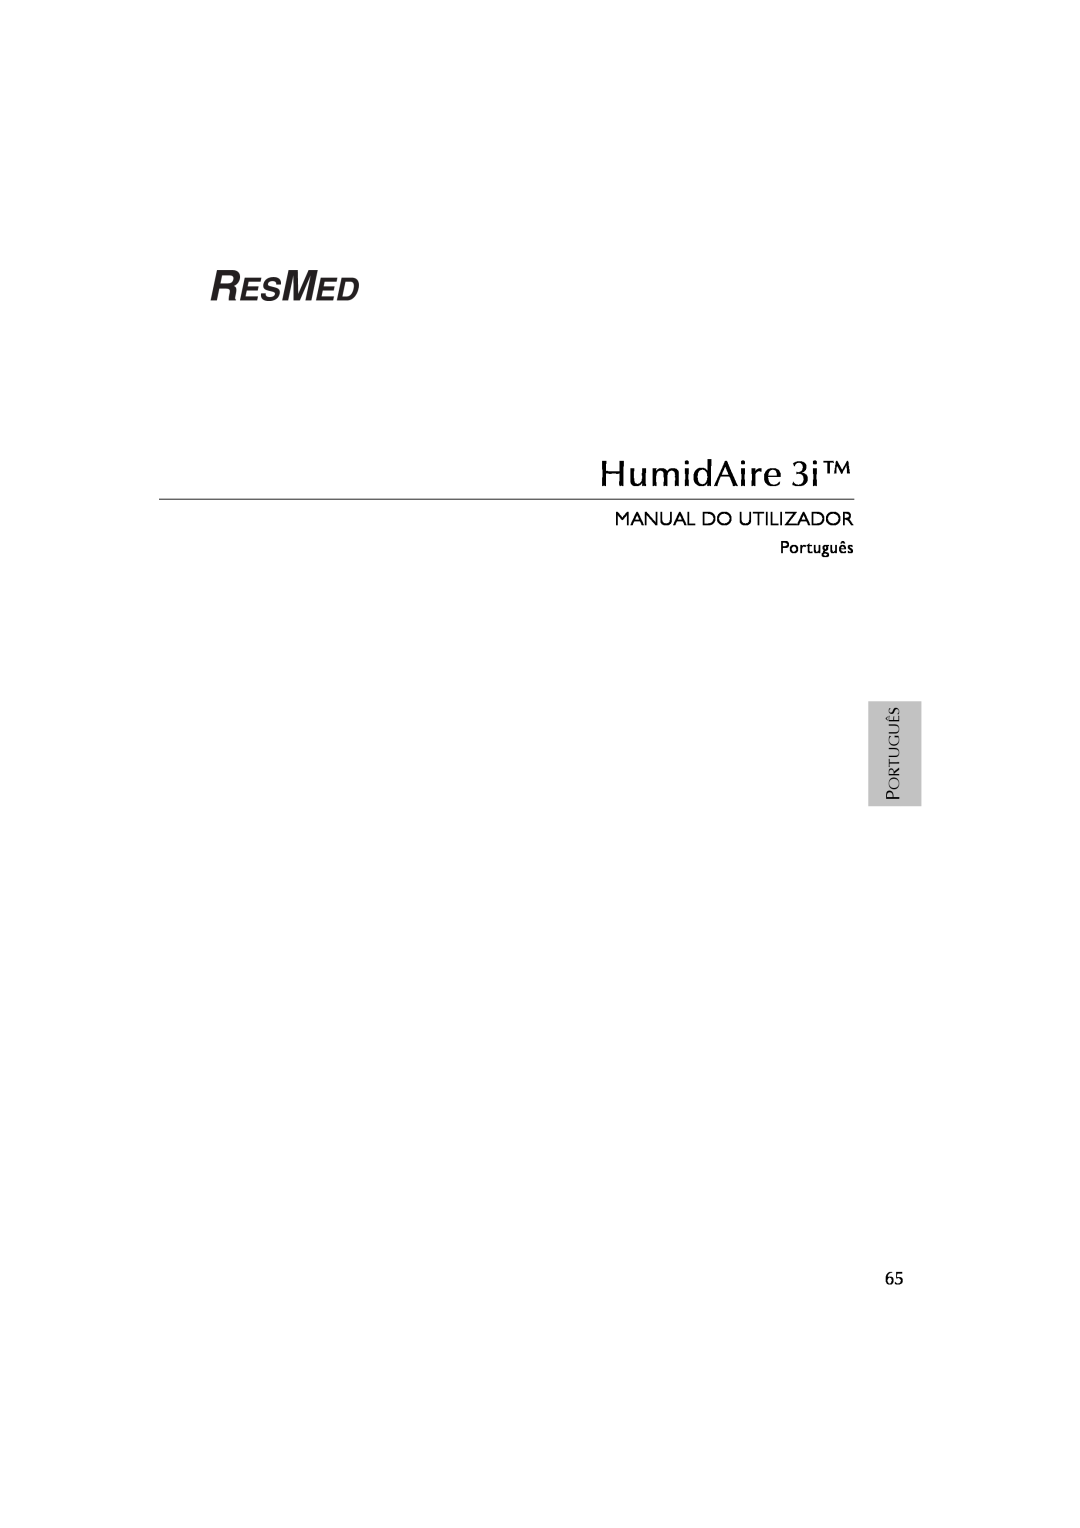 ResMed 3I user manual Manual Do Utilizador, HumidAire, Português 